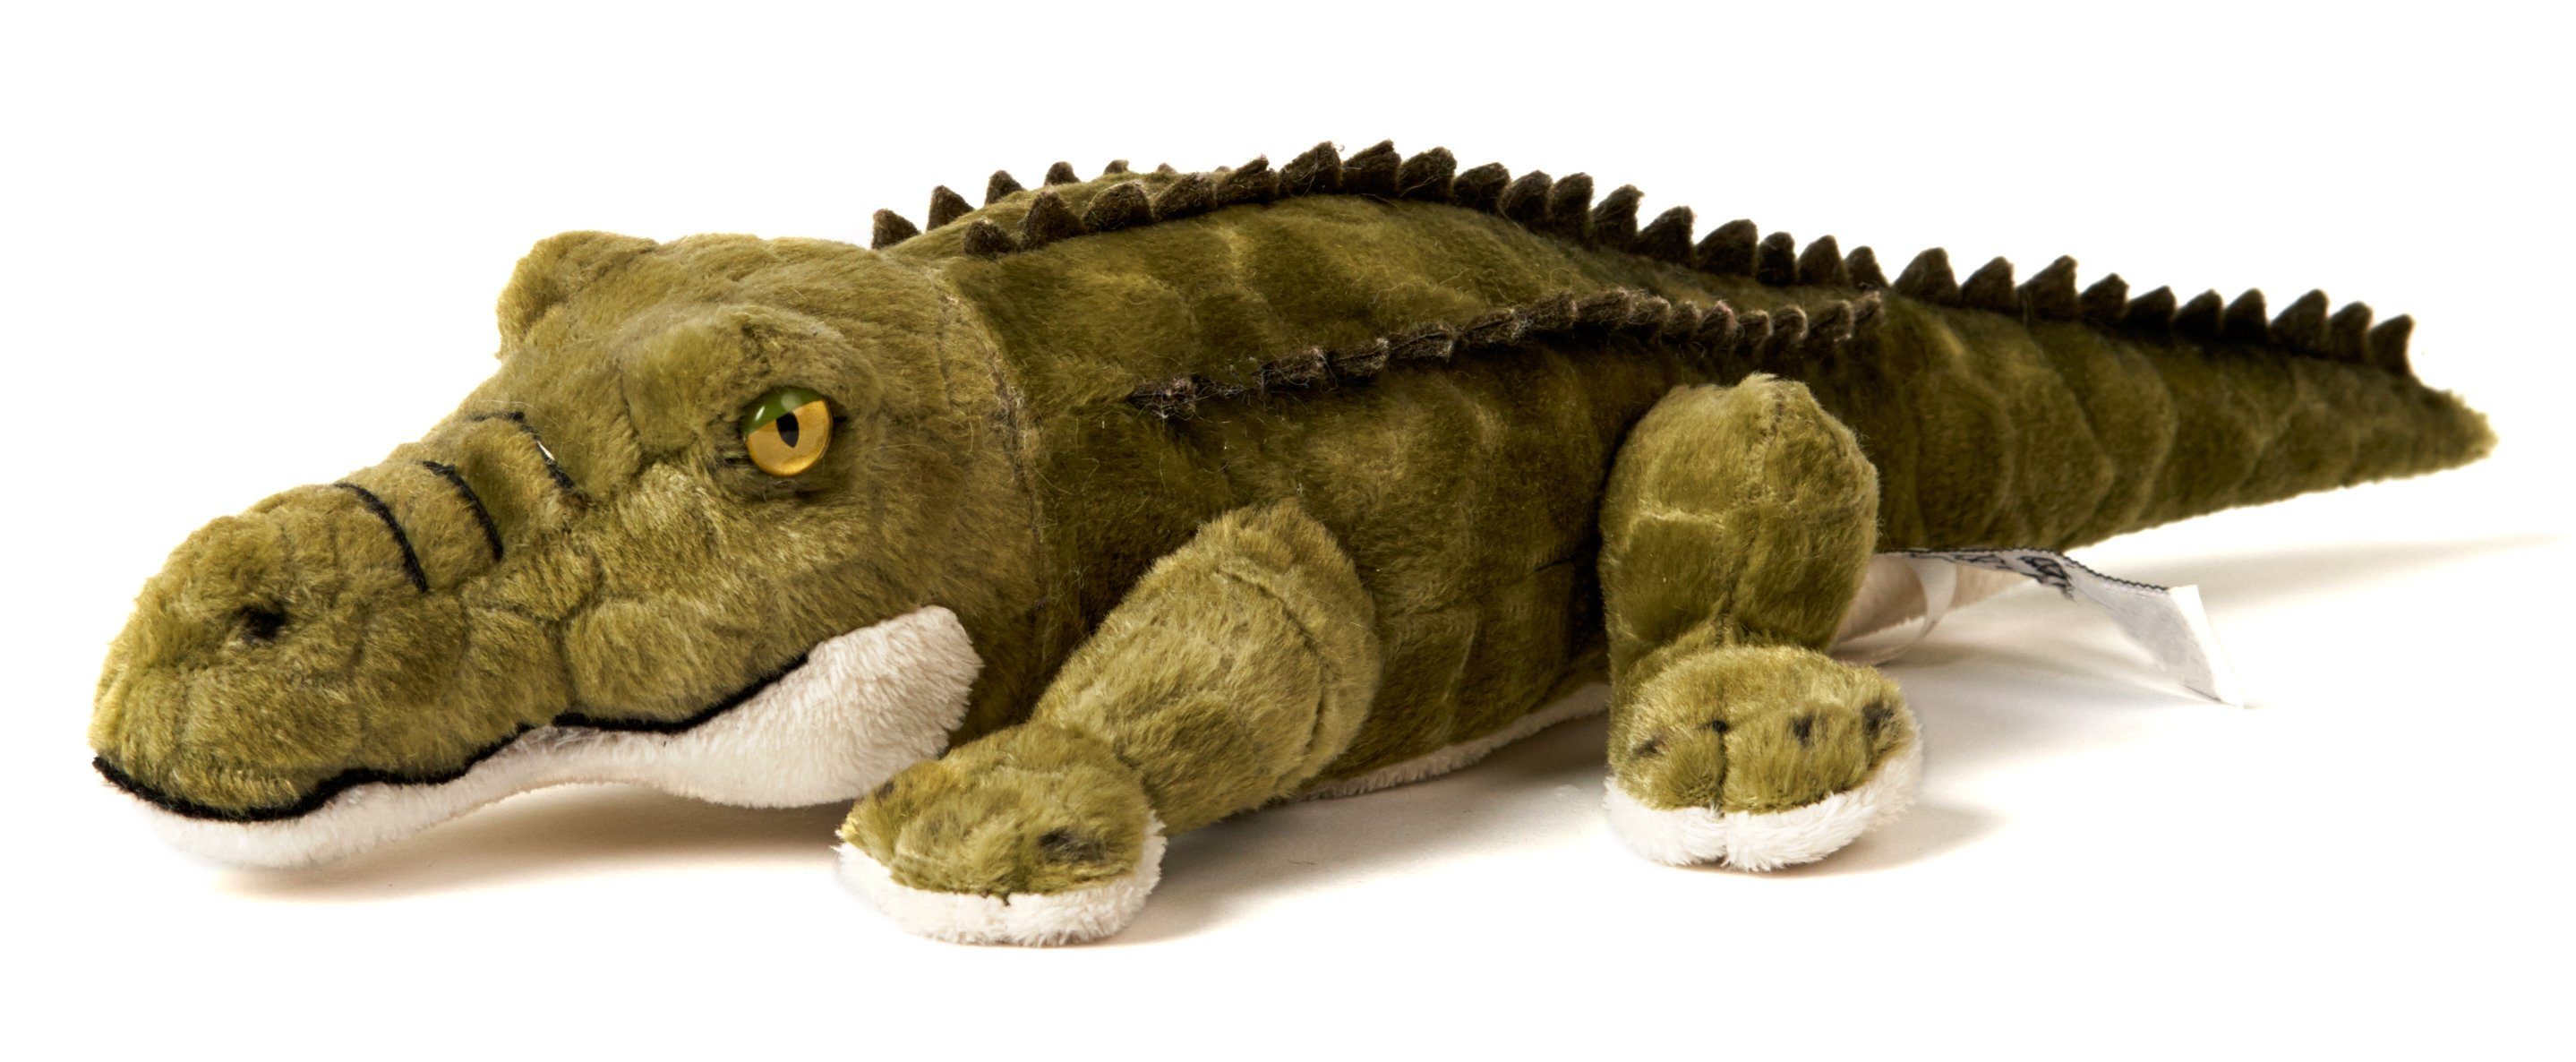 Uni-Toys Kuscheltier Alligator - 33 cm (Länge) - Plüsch-Krokodil - Plüschtier, zu 100 % recyceltes Füllmaterial